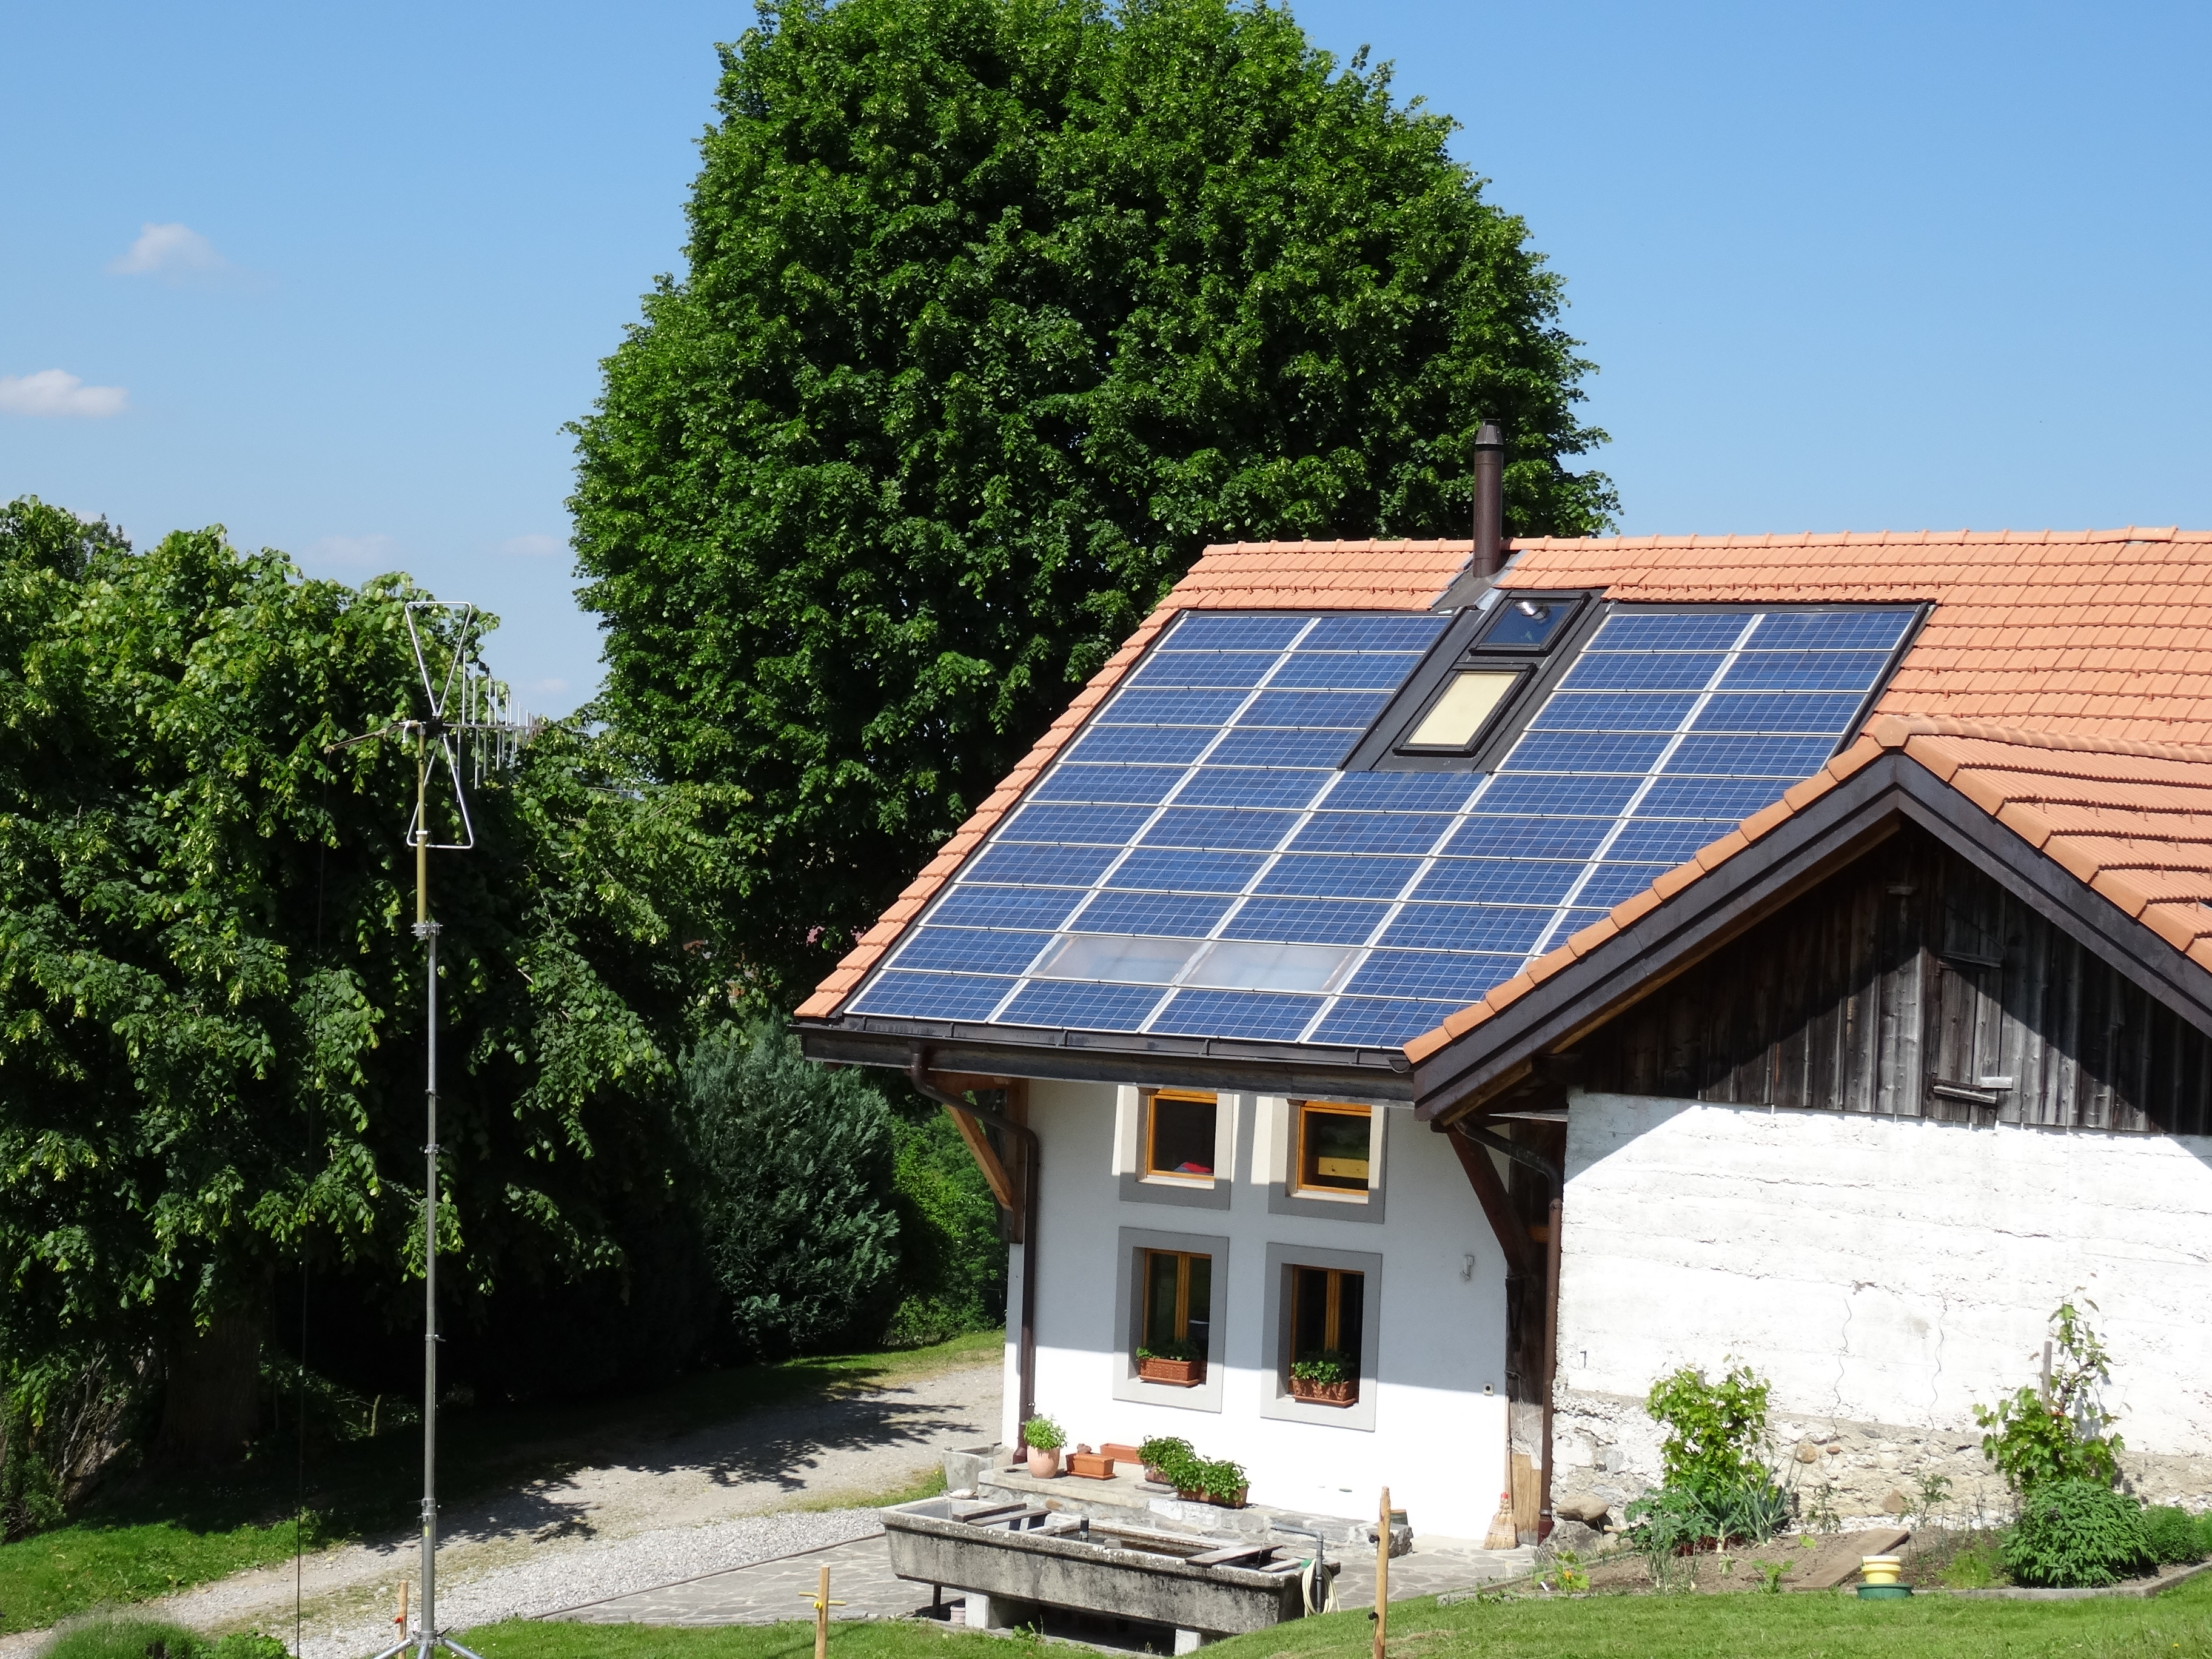 Fattoria con un impianto fotovoltaico sul tetto.